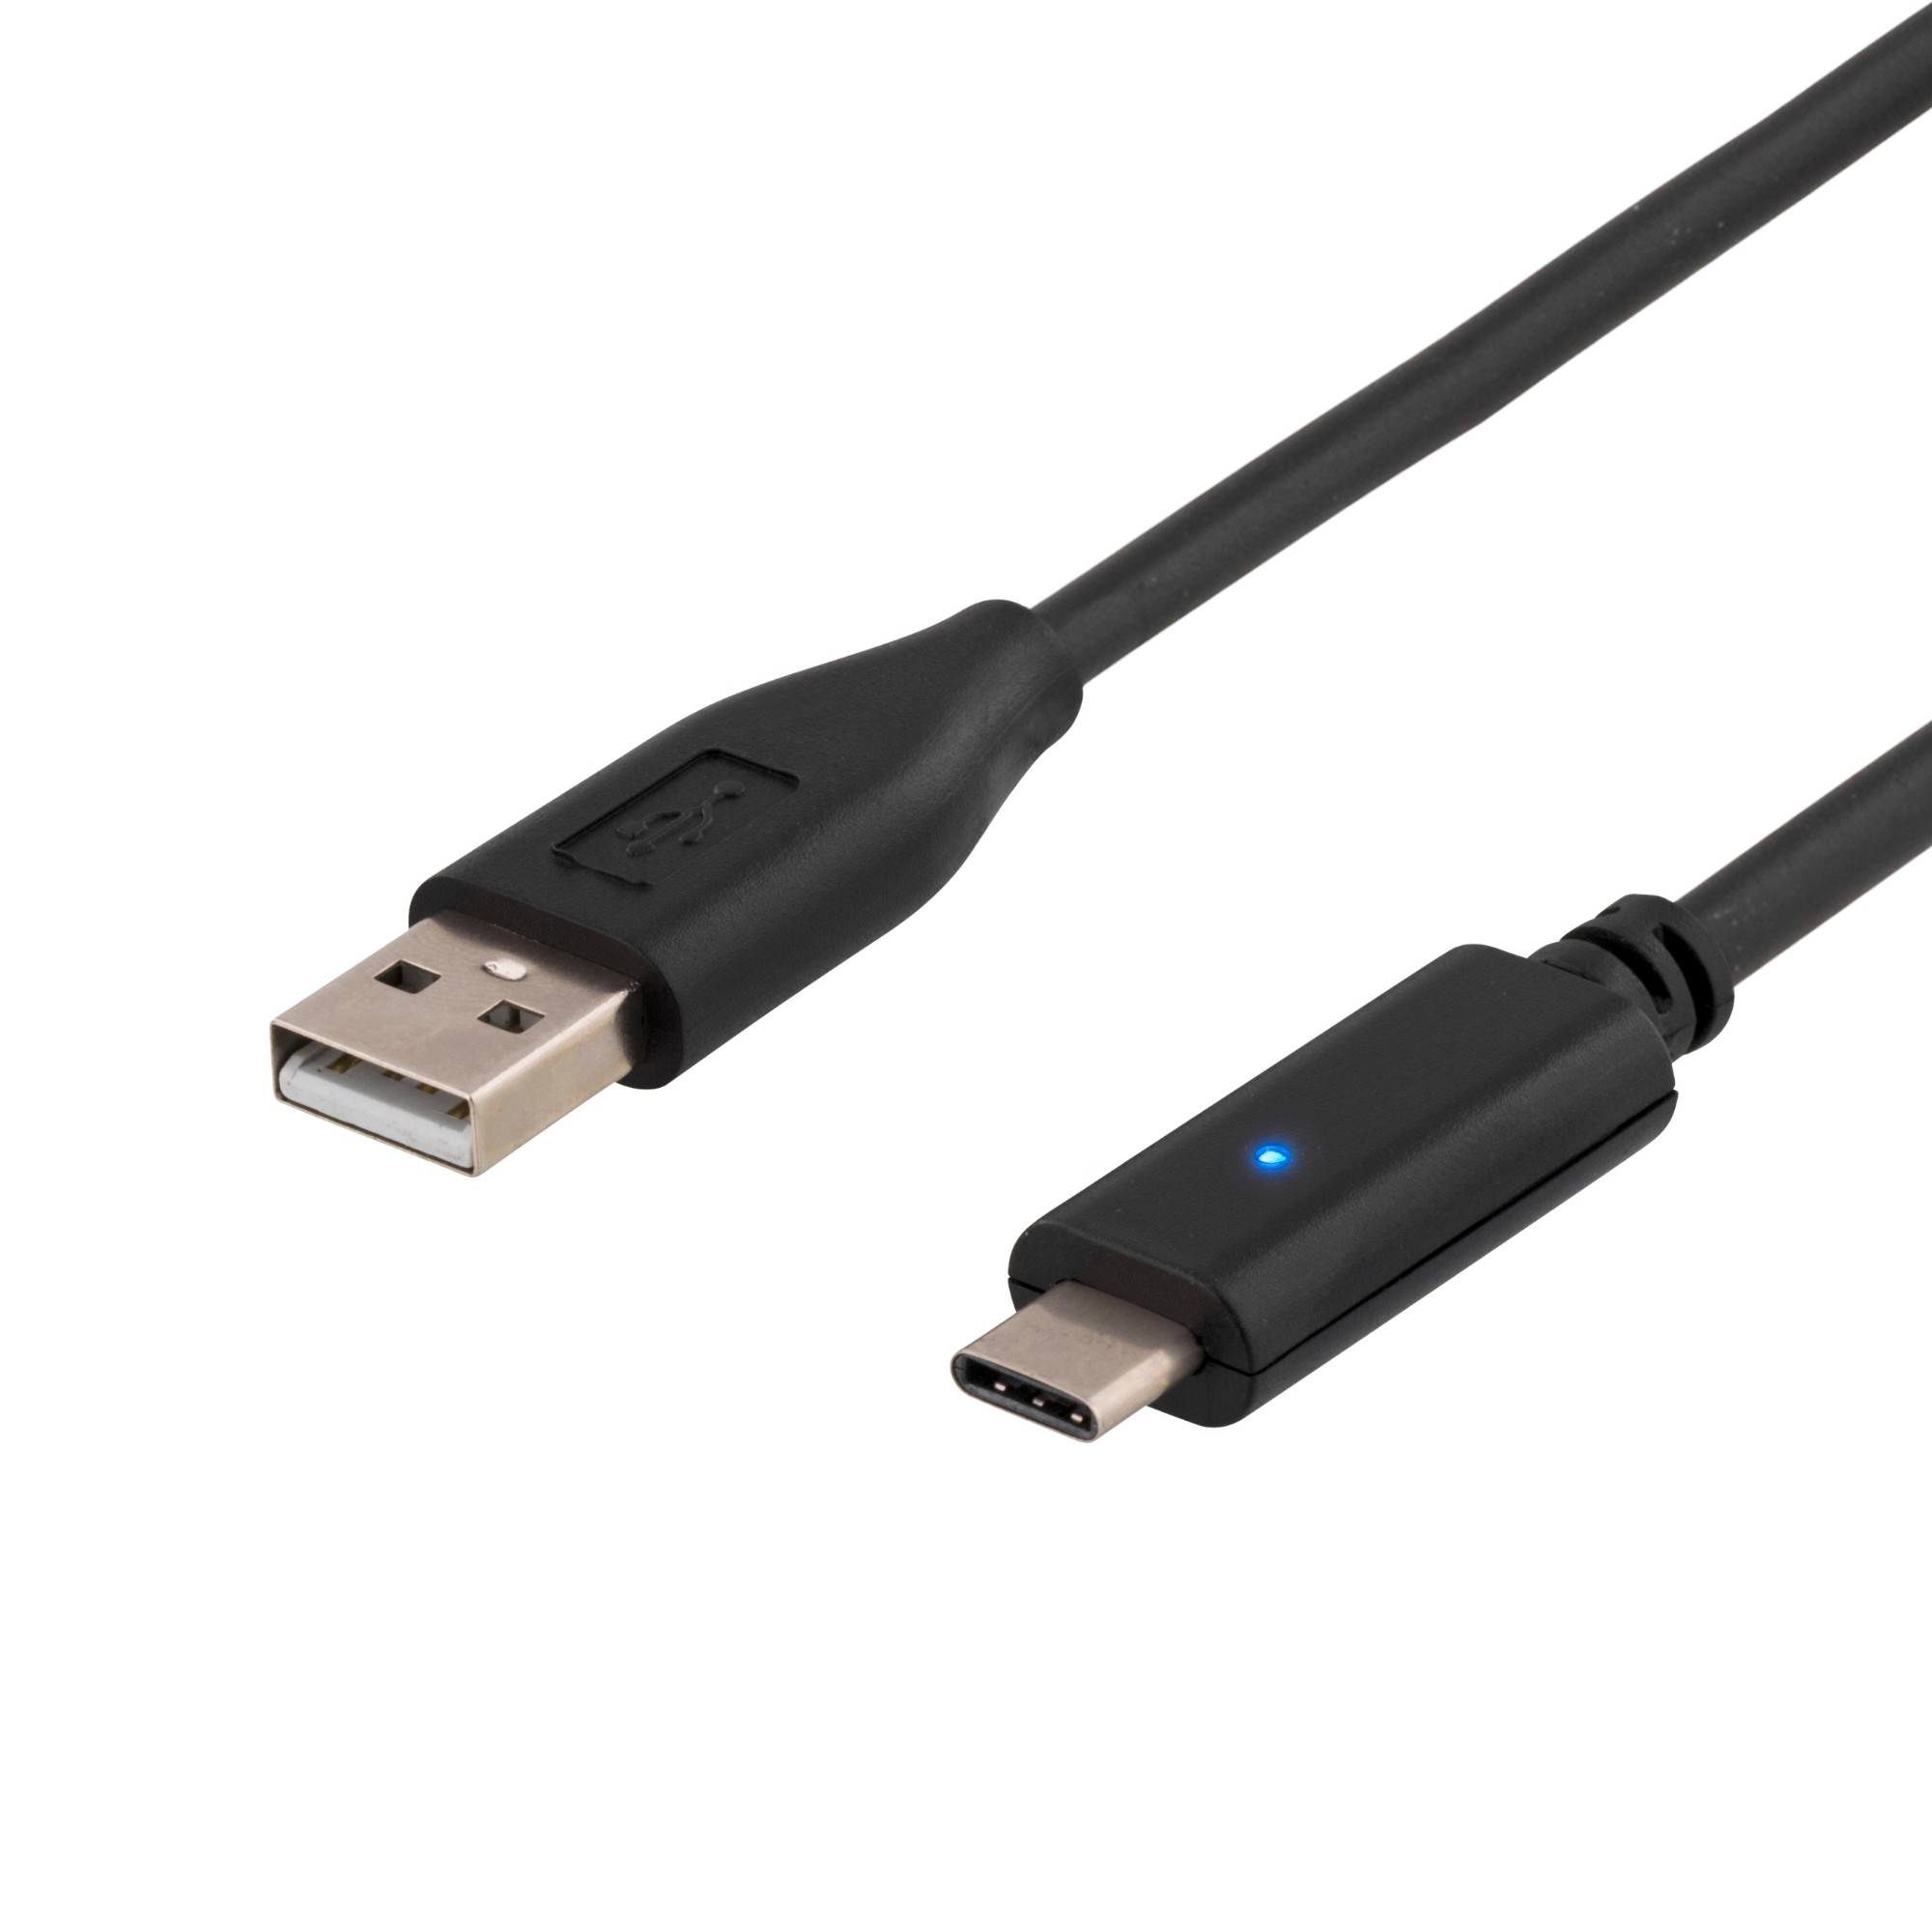 USBC-1003 DELTACO USBC-1003 - 0.5 m - USB C - USB A - USB 2.0 - 480 Mbit/s - Black